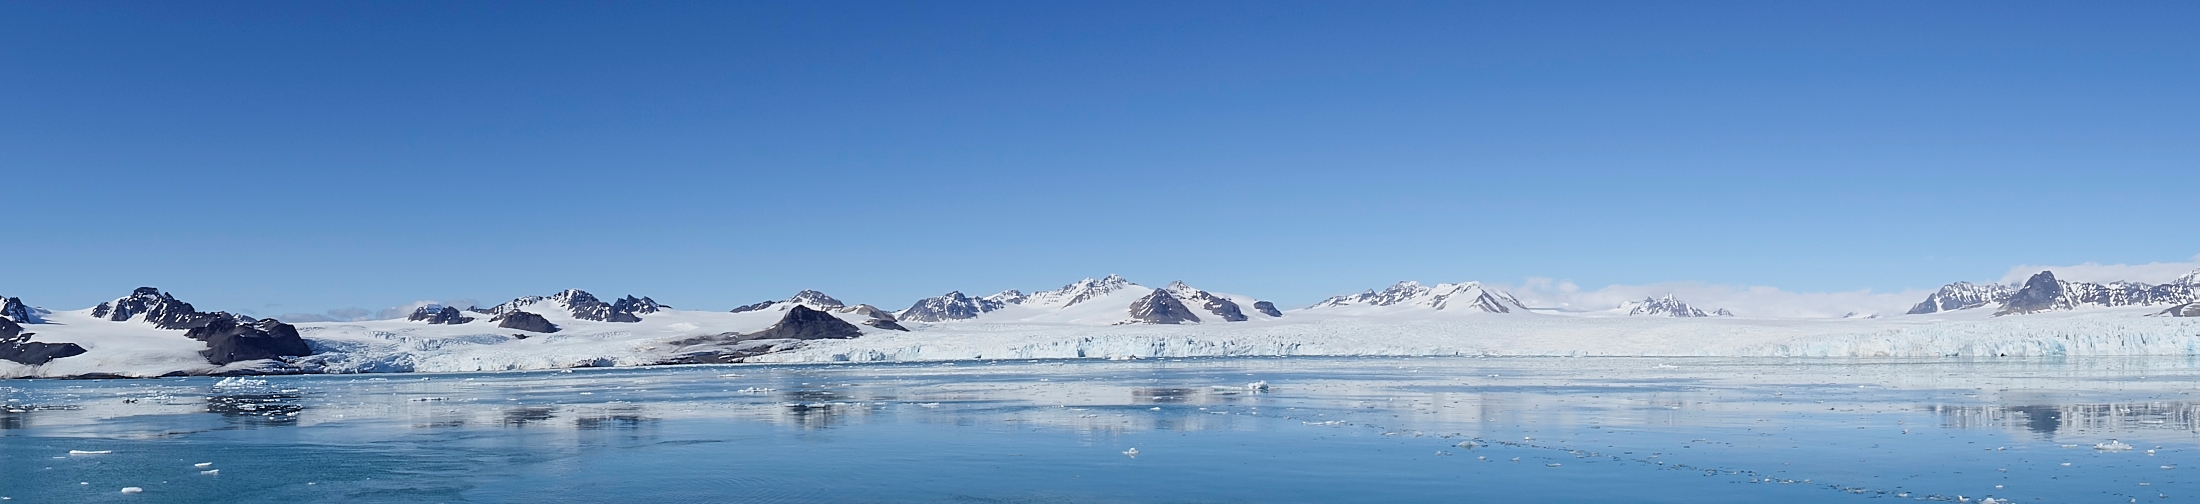 Gletscherpanorama von Spitzbergen